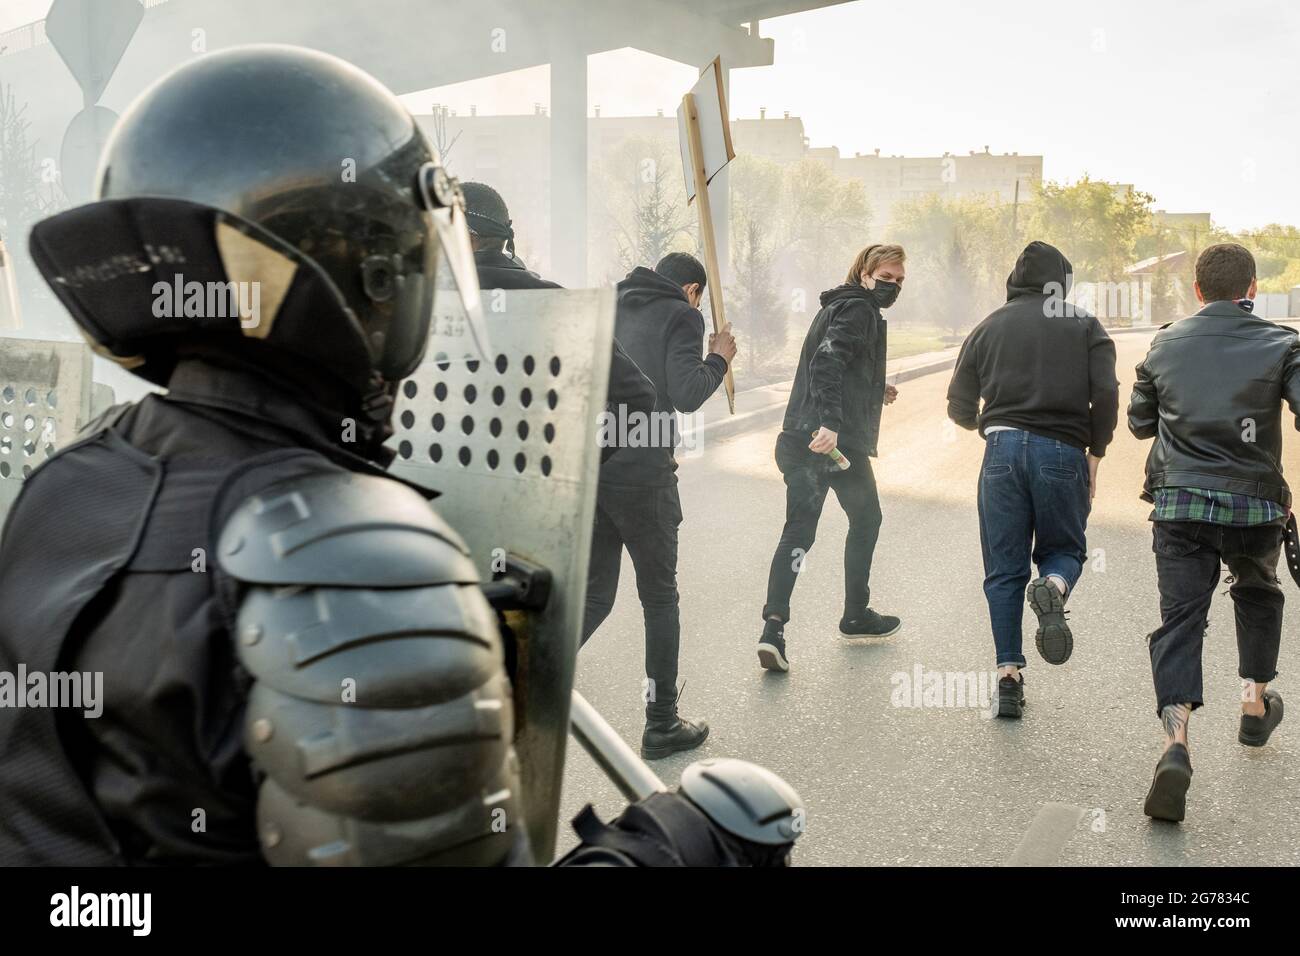 Polizeikräfte mit Helmen, die Bereitschaftschilde halten, bewegen sich zu laufenden Hooligans, während sie sie in der Stadt aufhalten Stockfoto